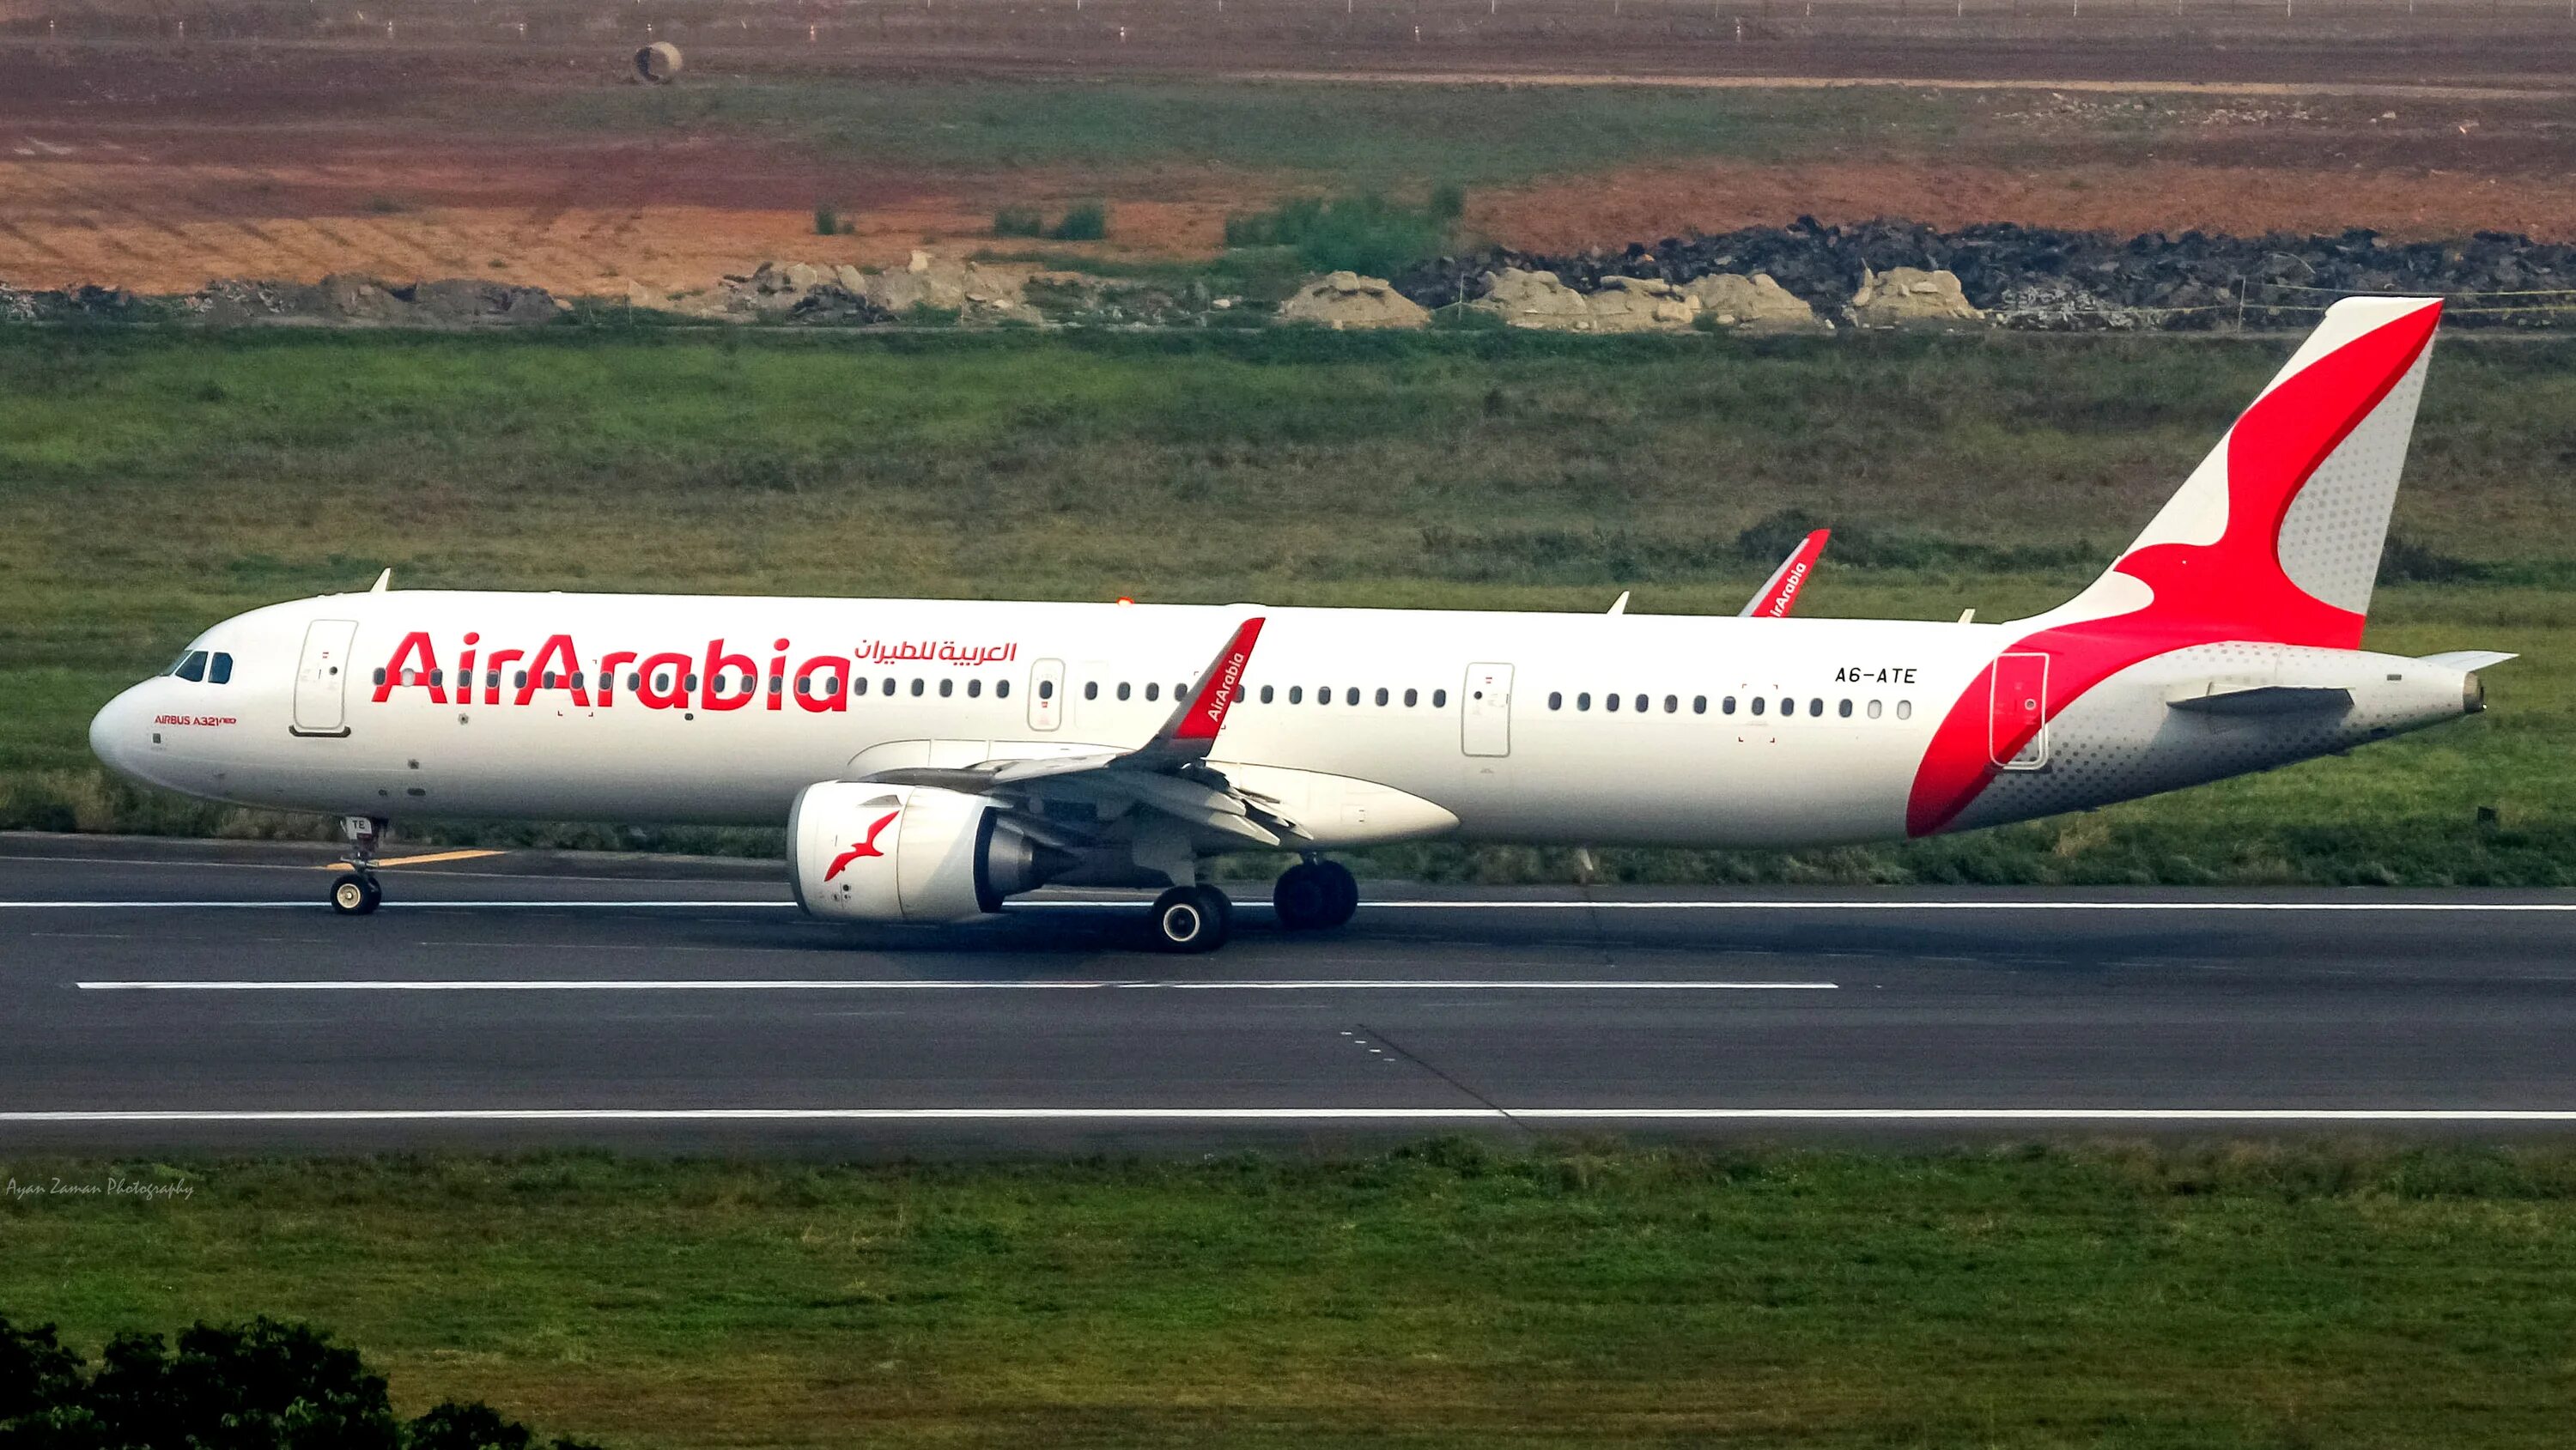 Айр арабиан. Airbus a321-251nx. Airbus a321 Air Arabia. Airbus a321-251nx Air Arabia. Самолет а320 Air Arabia.